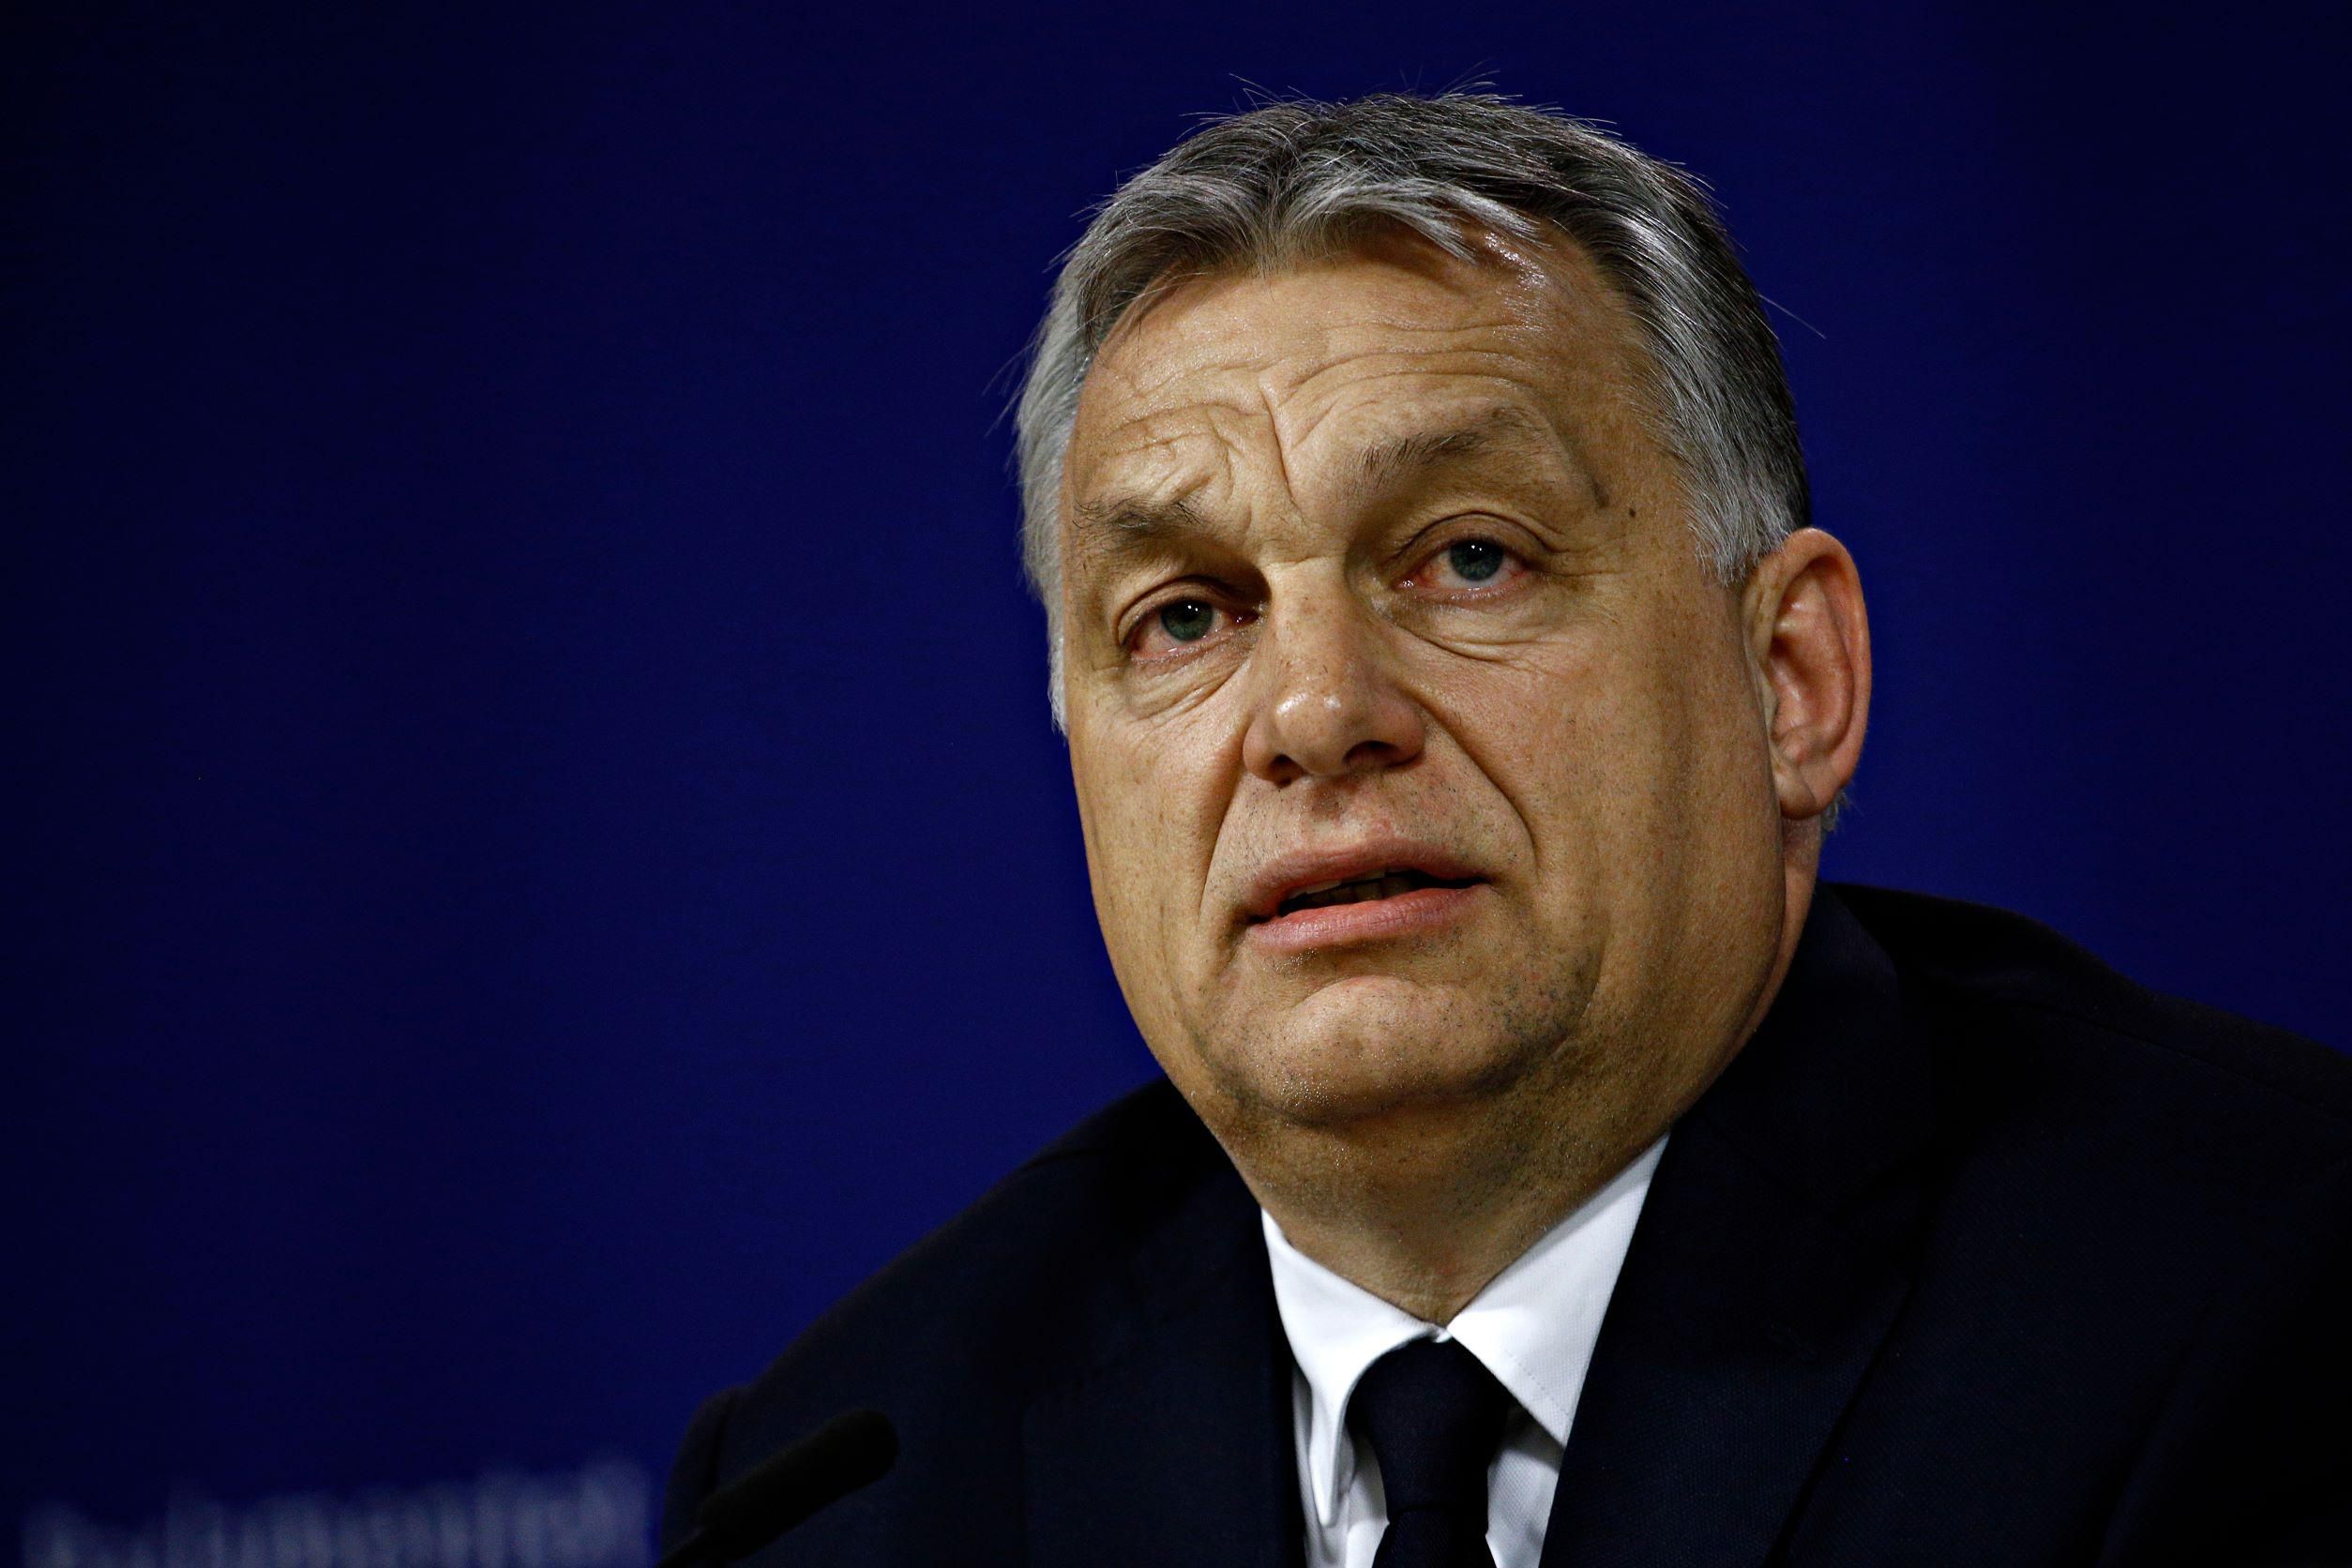 Orbán Viktor miniszterelnök sötét zakóban, fehér ingben, sötét nyakkendőben nézi a róla készült NFT-gyűjteményt